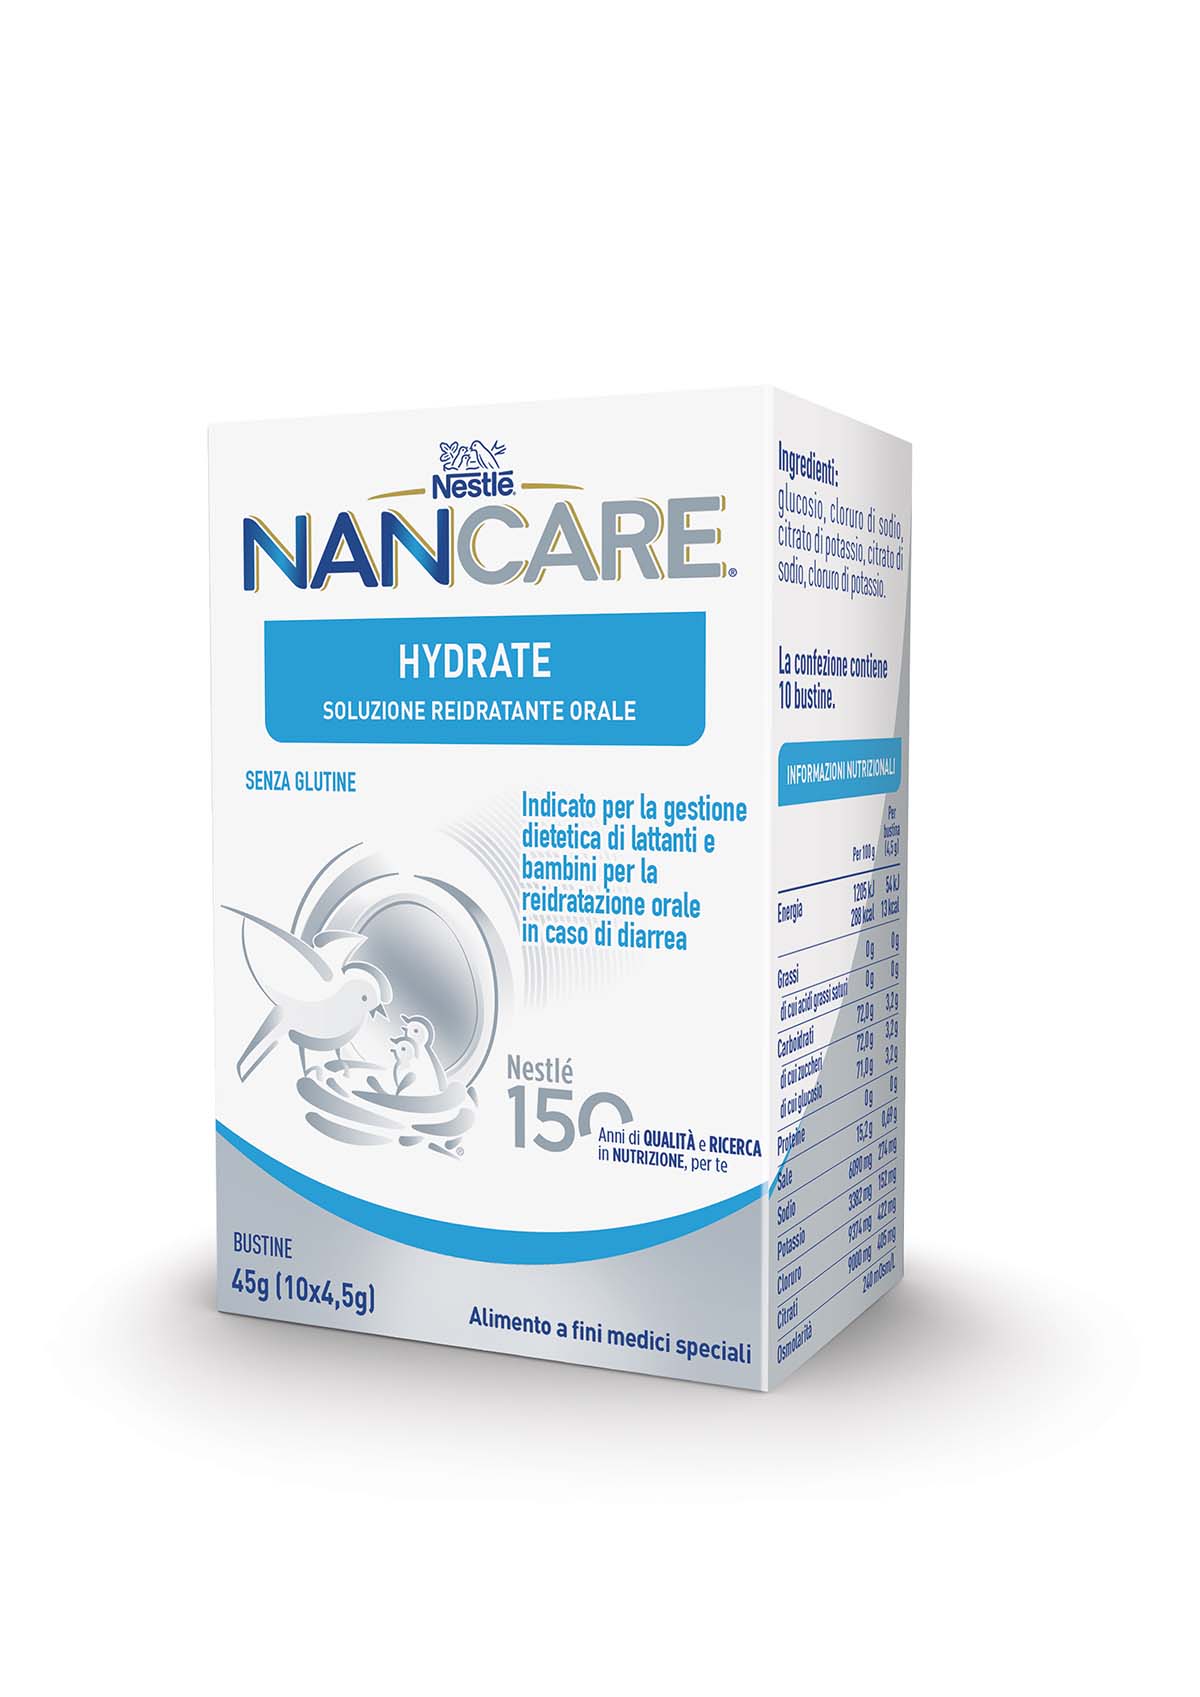 Nestlé NANCARE HYDRATE, soluzione reidratante orale per lattanti e bambini. Alimento a fini medici speciali